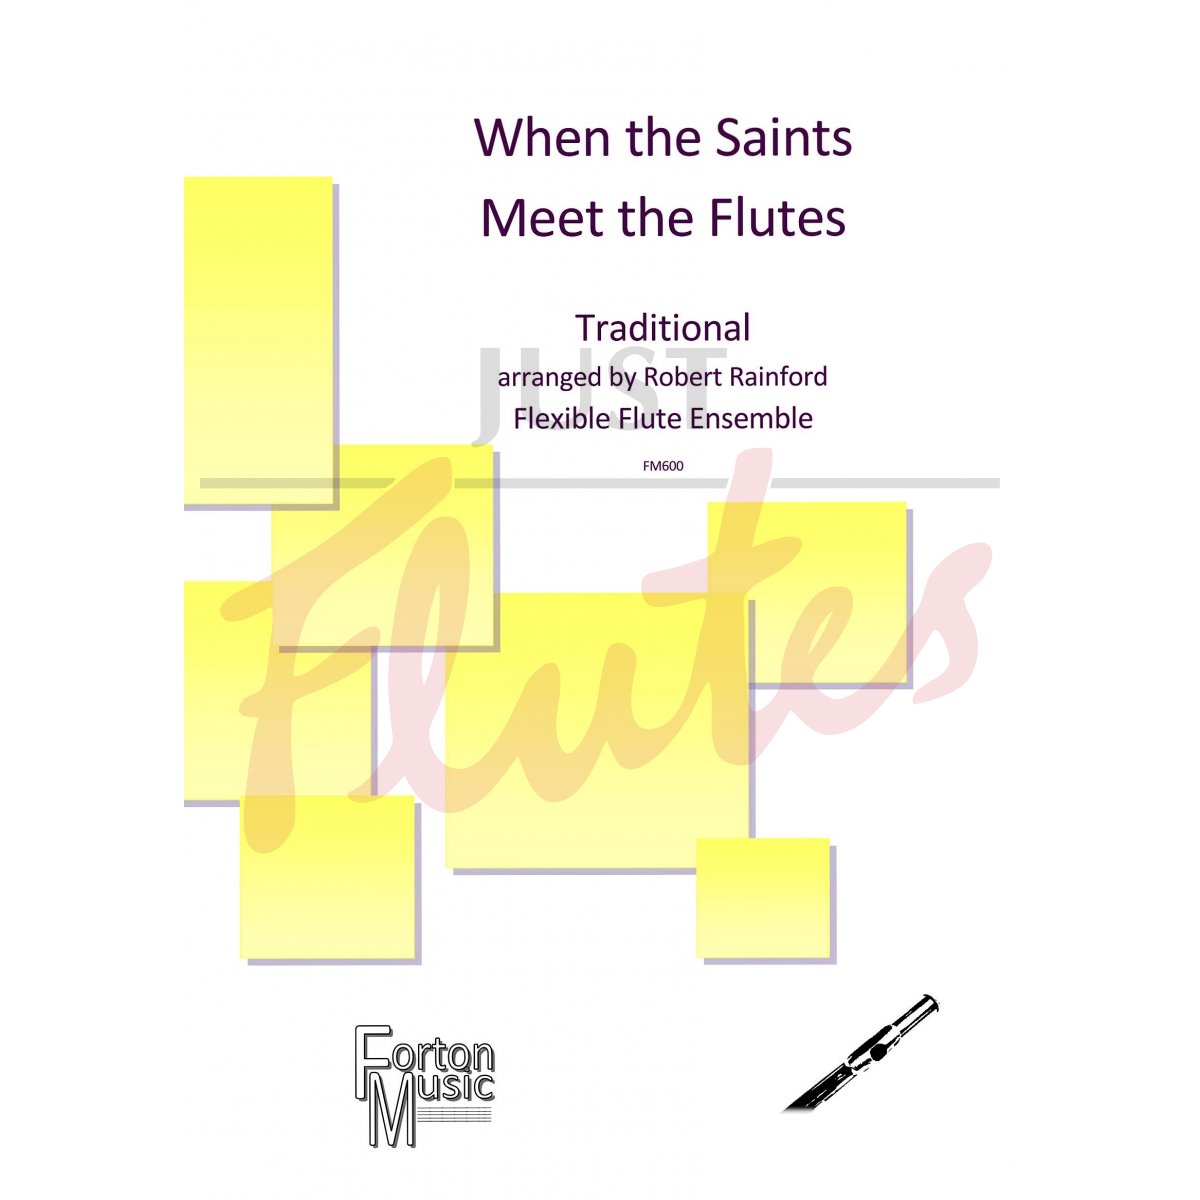 When the Saints Meet the Flutes for Flexible Flute Ensemble